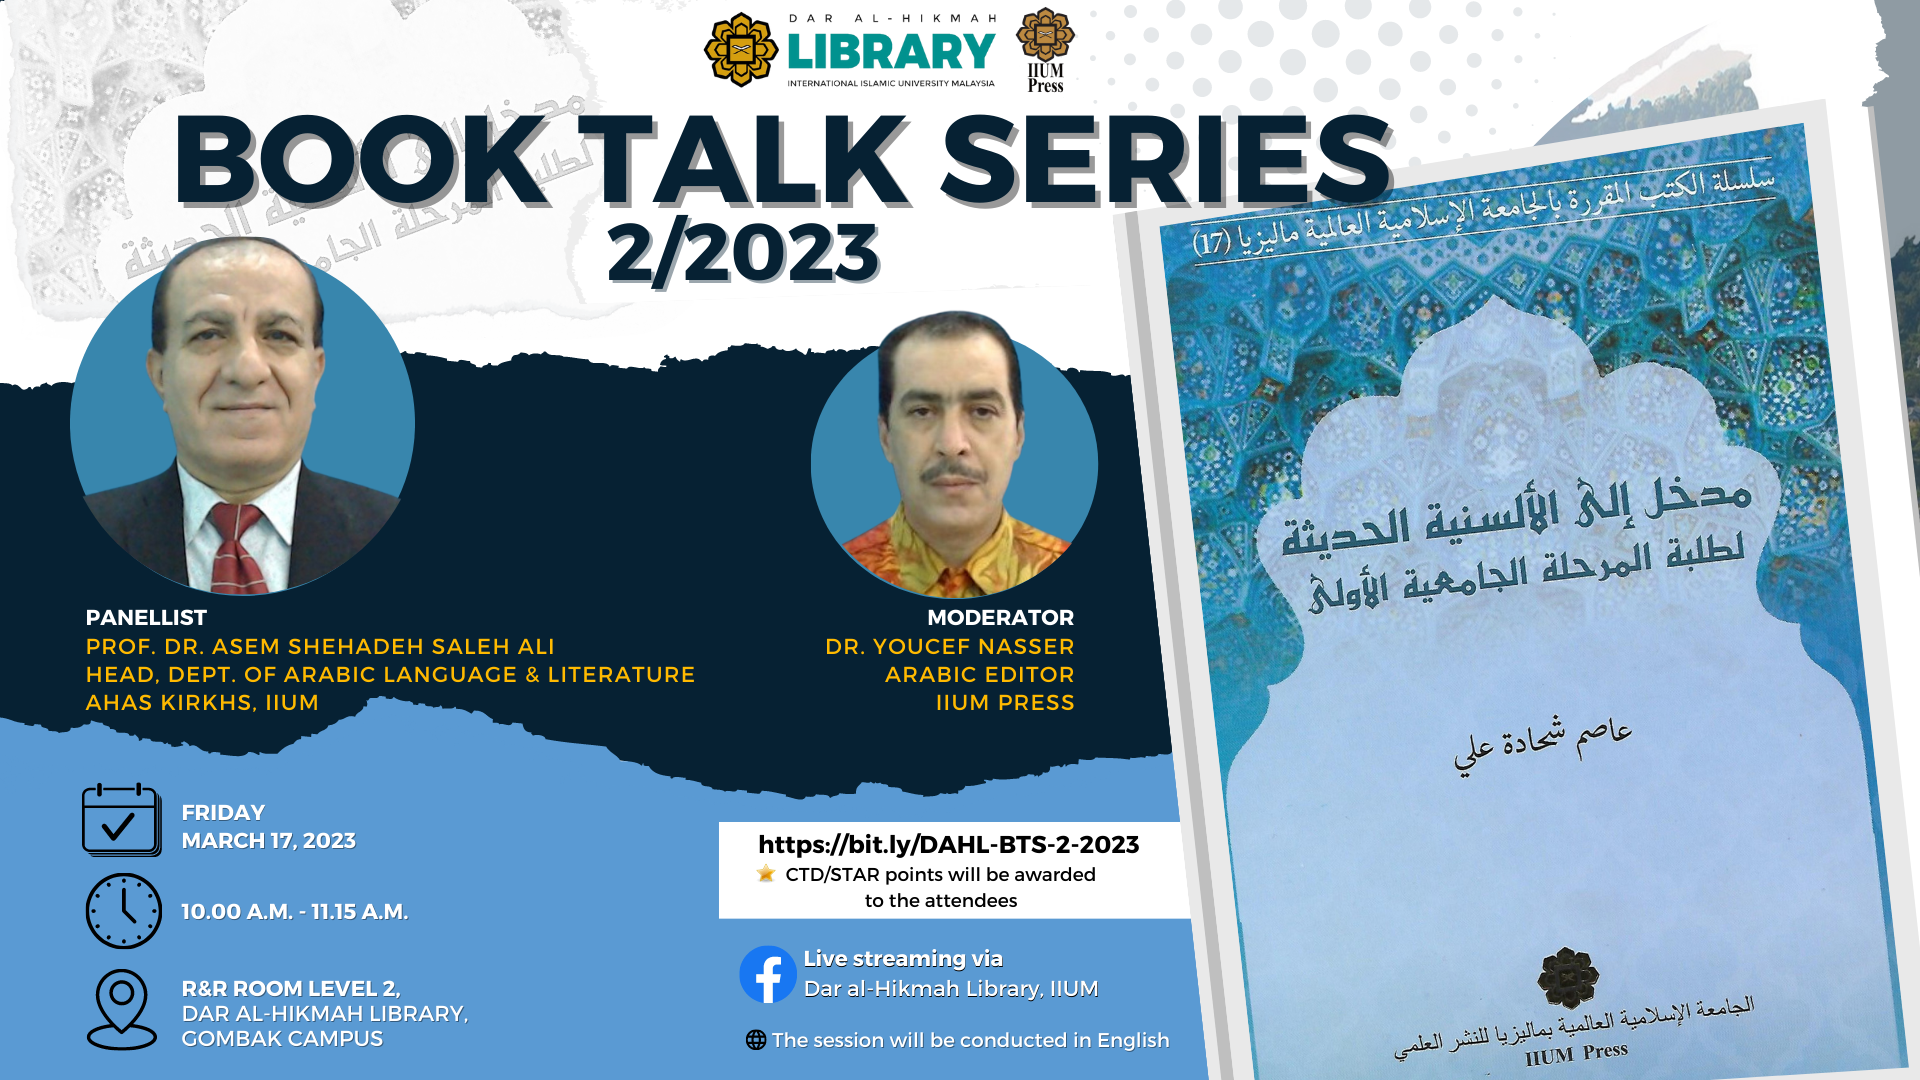 DAR AL-HIKMAH LIBRARY BOOK TALK SERIES NO.2 / 2023